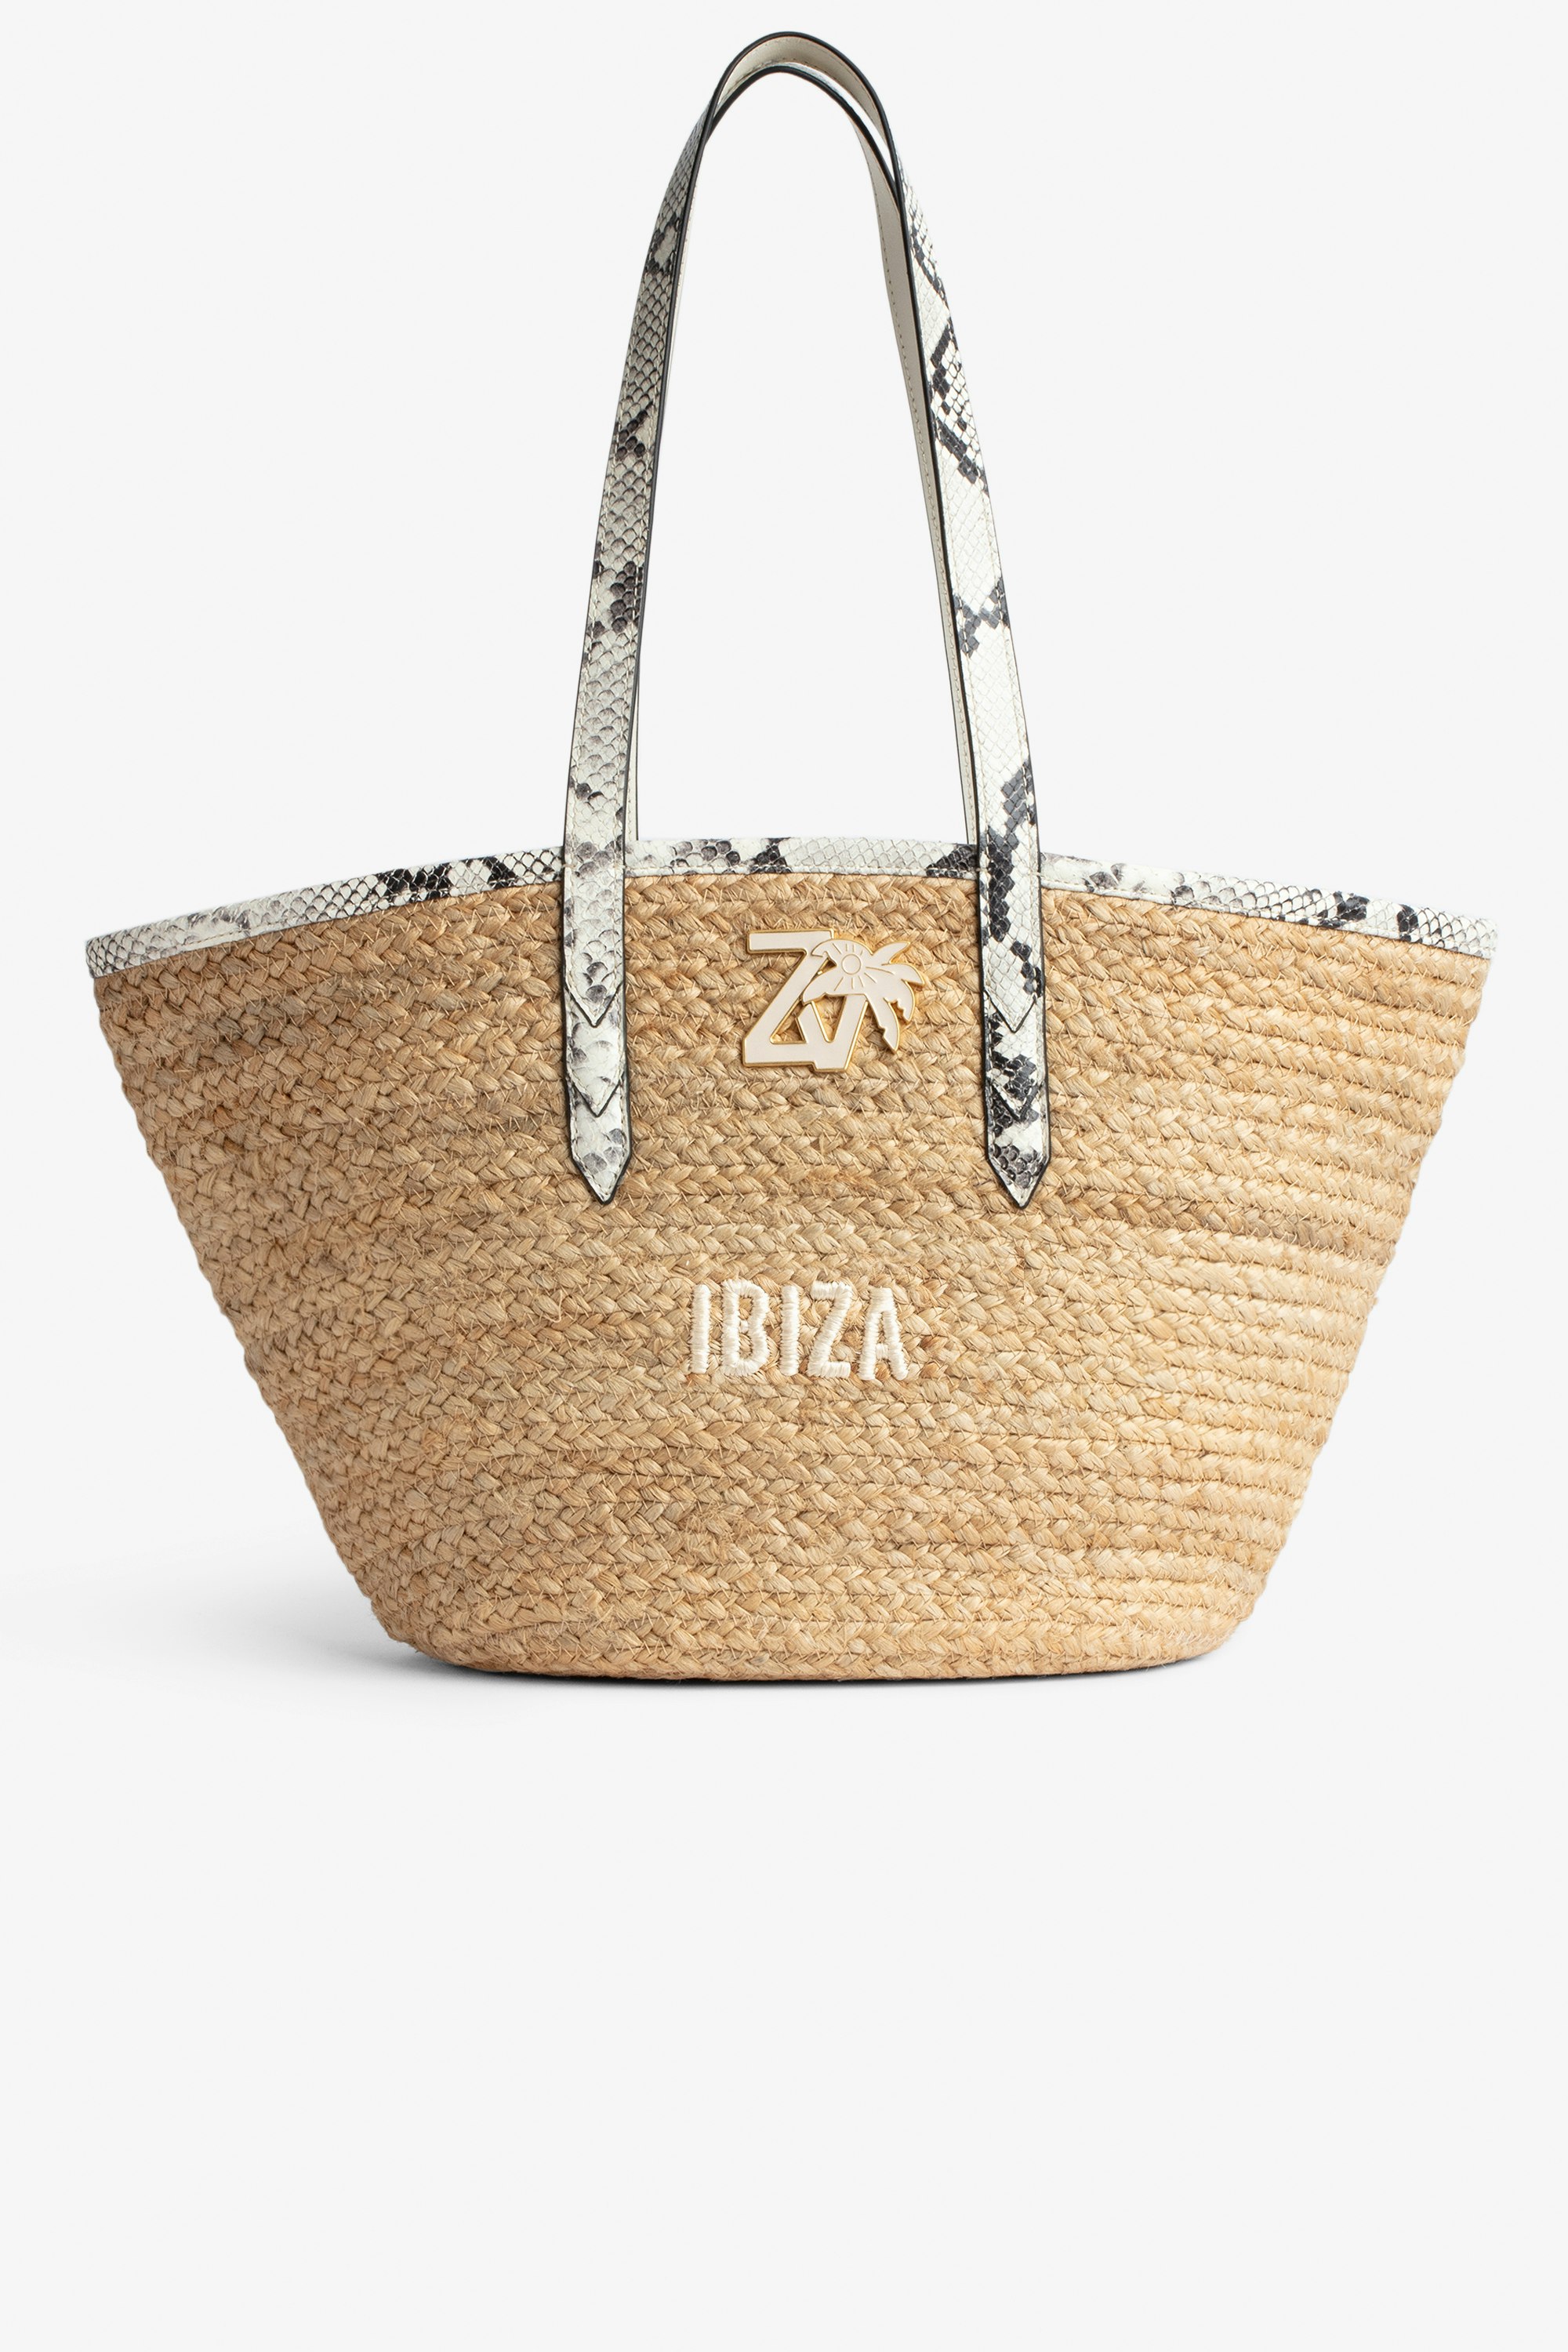 Borsa Le Beach Bag Borsa in paglia con manici in pelle ecru effetto pitone, con ricamo "Ibiza" e impreziosita da un charm ZV - Donna